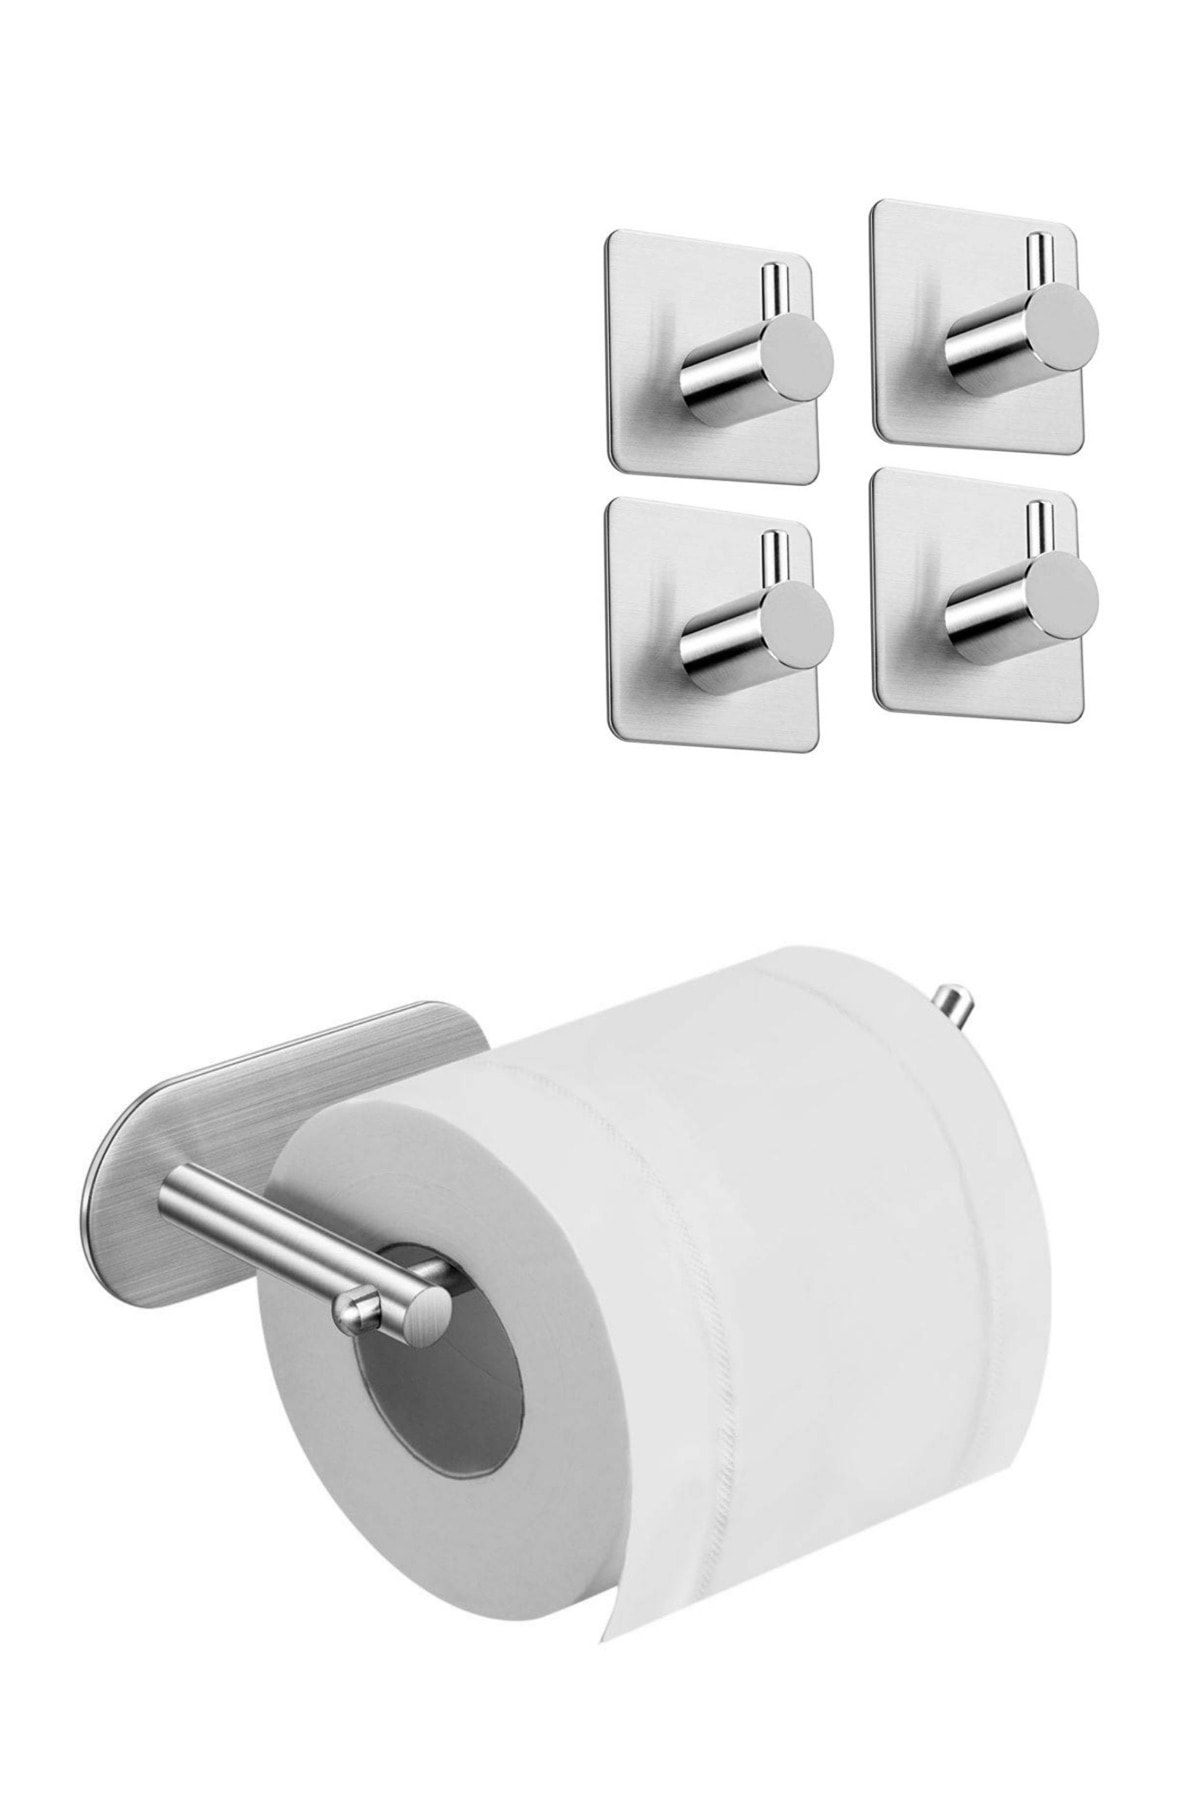 DELTAHOME Paslanmaz Çelik Set Tuvalet Kağıtlığı - 4 Adet Havluluk - Yapışkanlı Bant Sistem